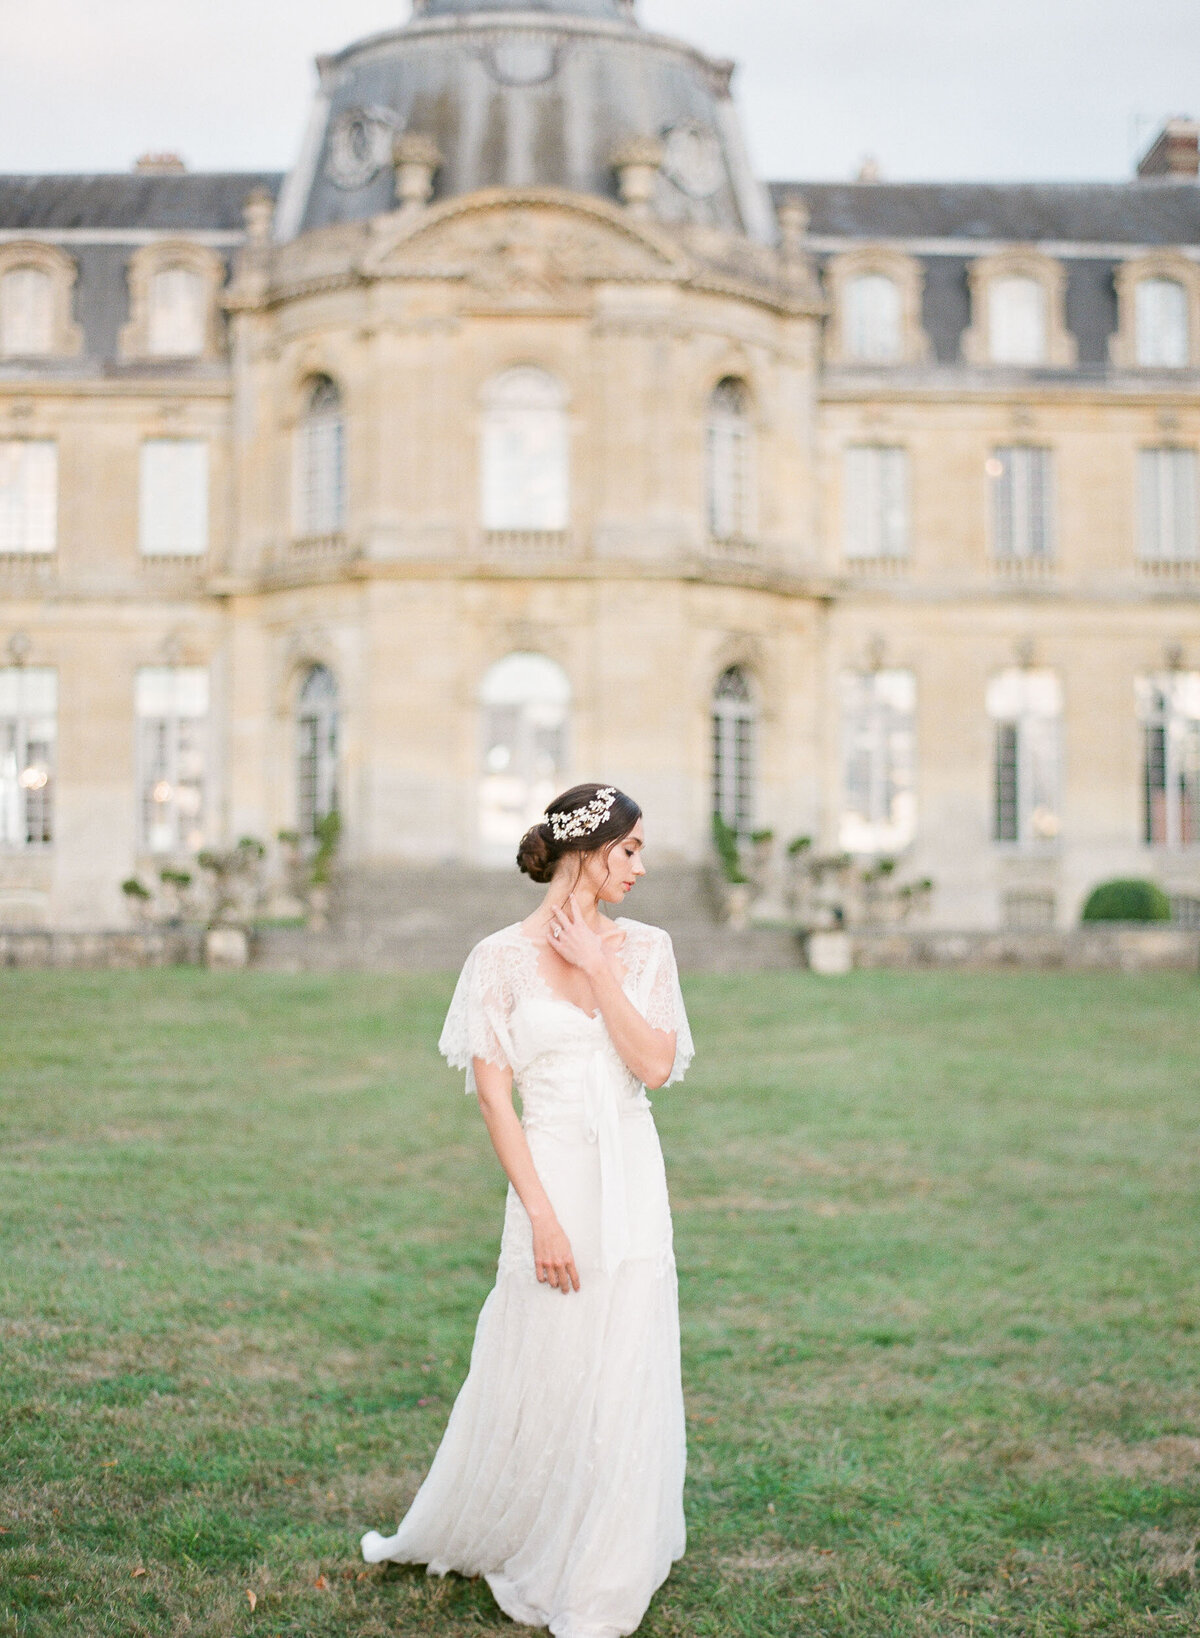 Alexandra-Vonk-wedding-chateau-de-champlatreux-France-34